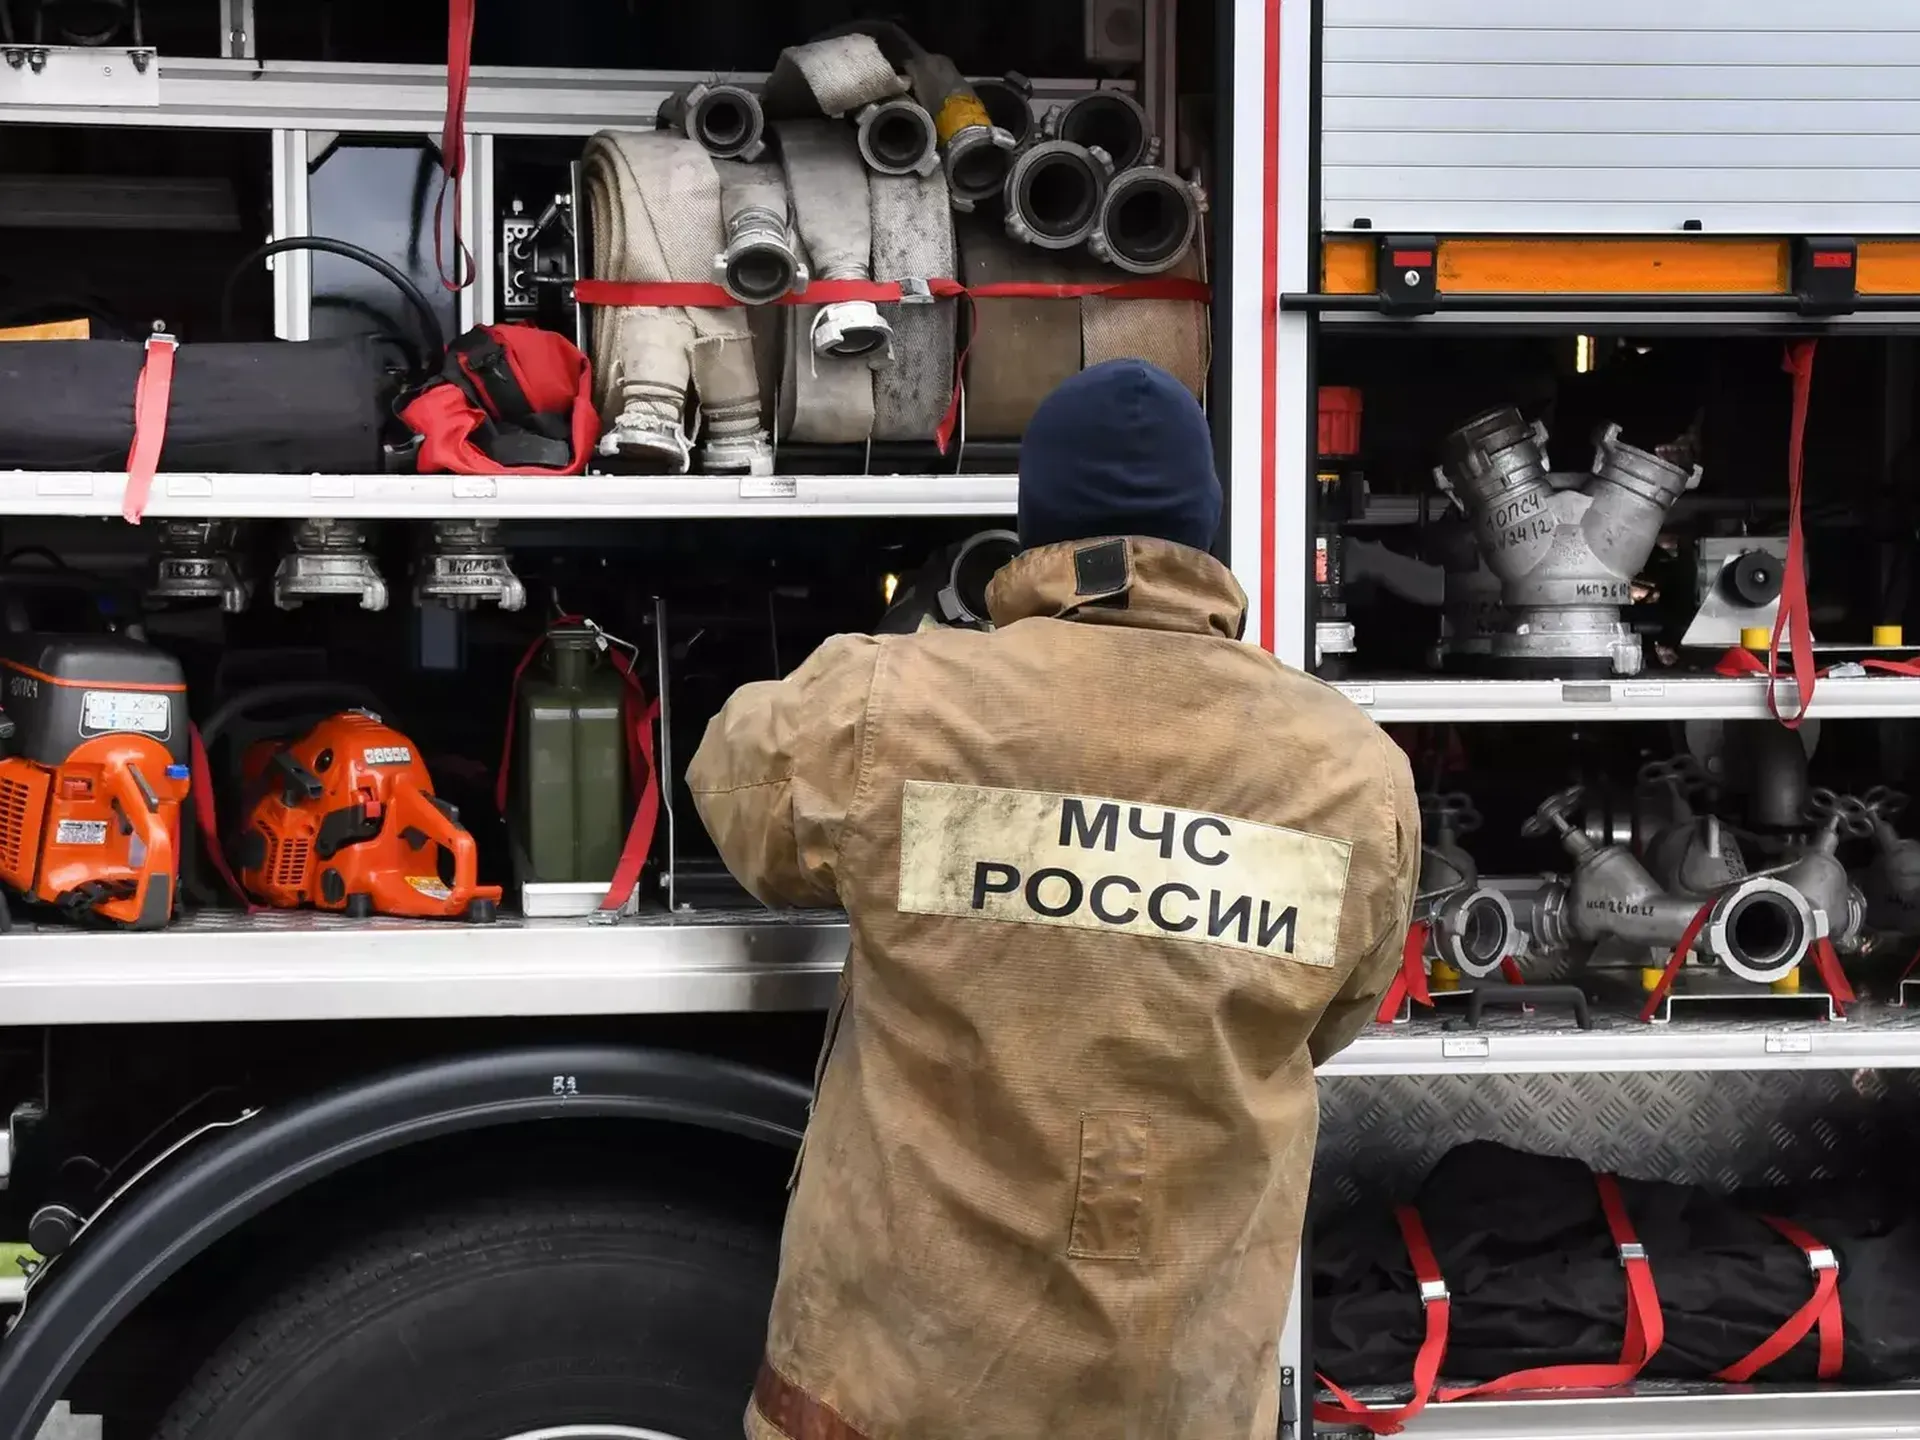 Пожар в торговом комплексе на Ставрополье локализован — МЧС